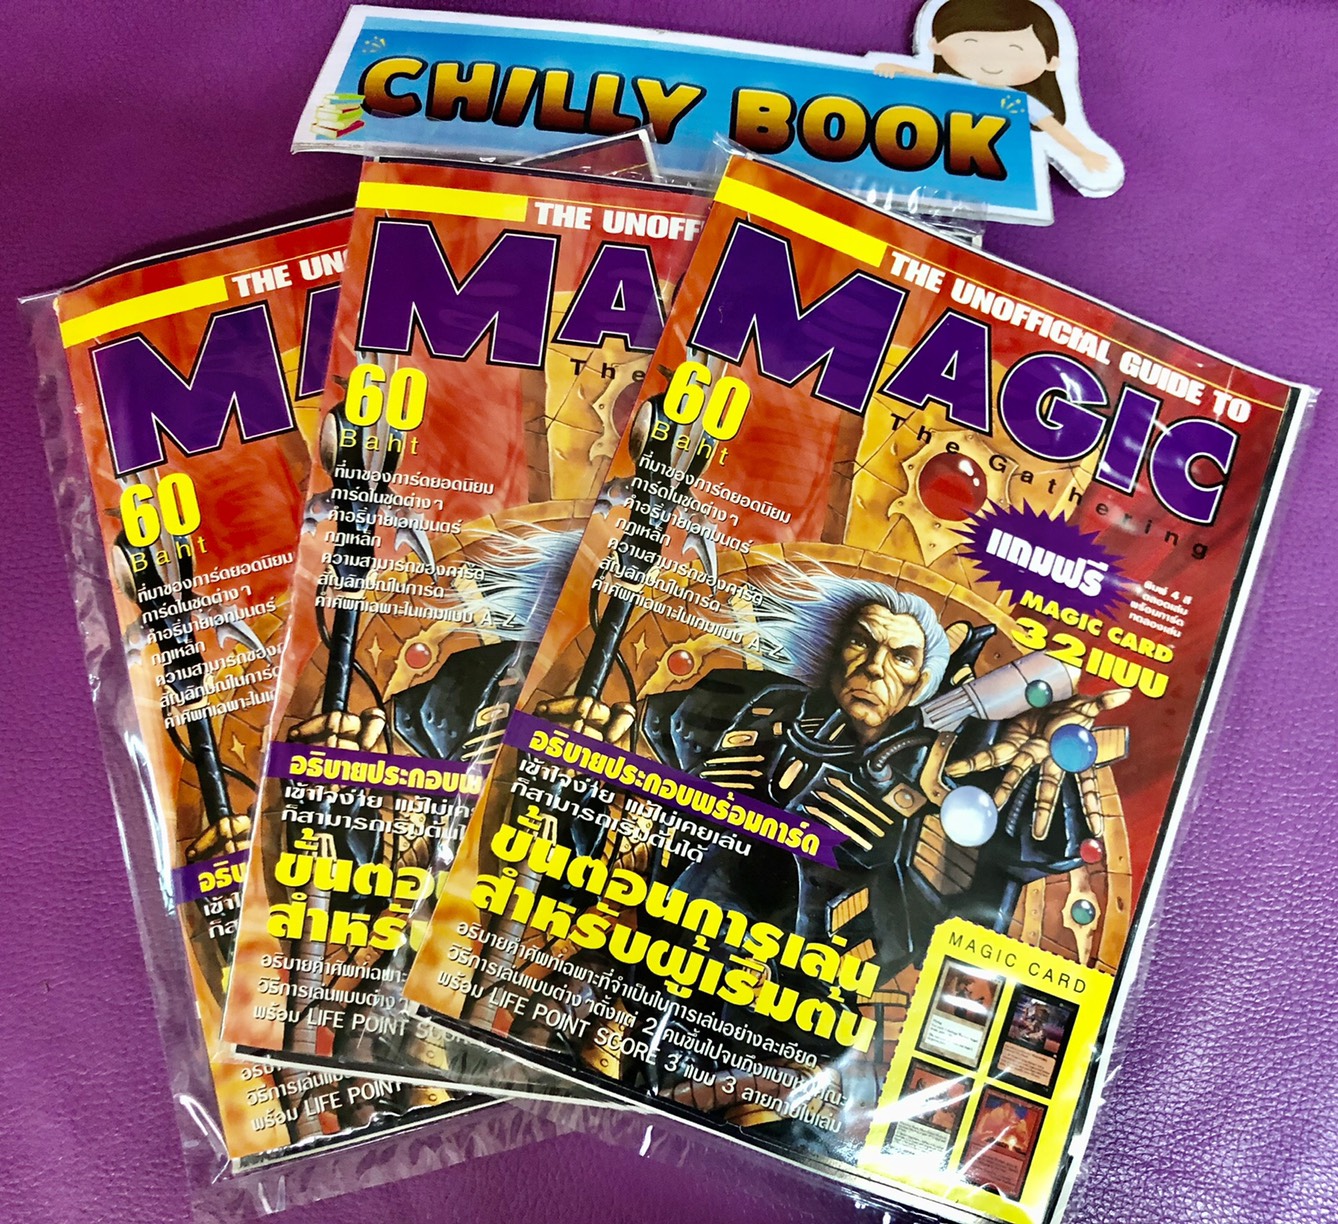 นิตยสารเกมส์ Card Magic the gathering Magic card 32 แบบ พร้อมกับการอธิบายภาพประกอบ ขั้นตอนการเล่นสำหรับผู้เริ่มต้น by Chilly Book